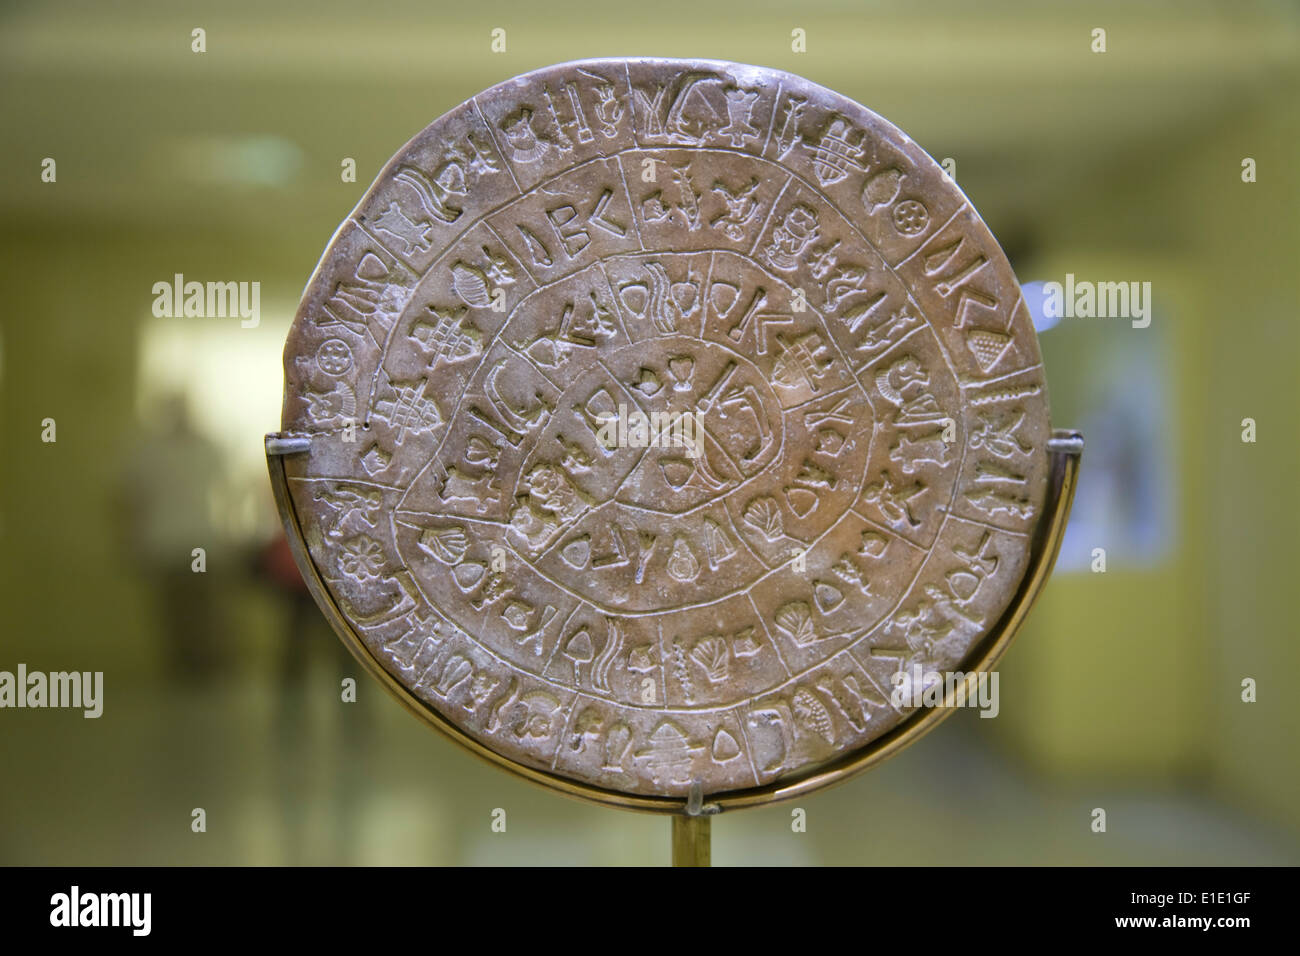 The Phaistos Disc. Found in Crete. Stock Photo